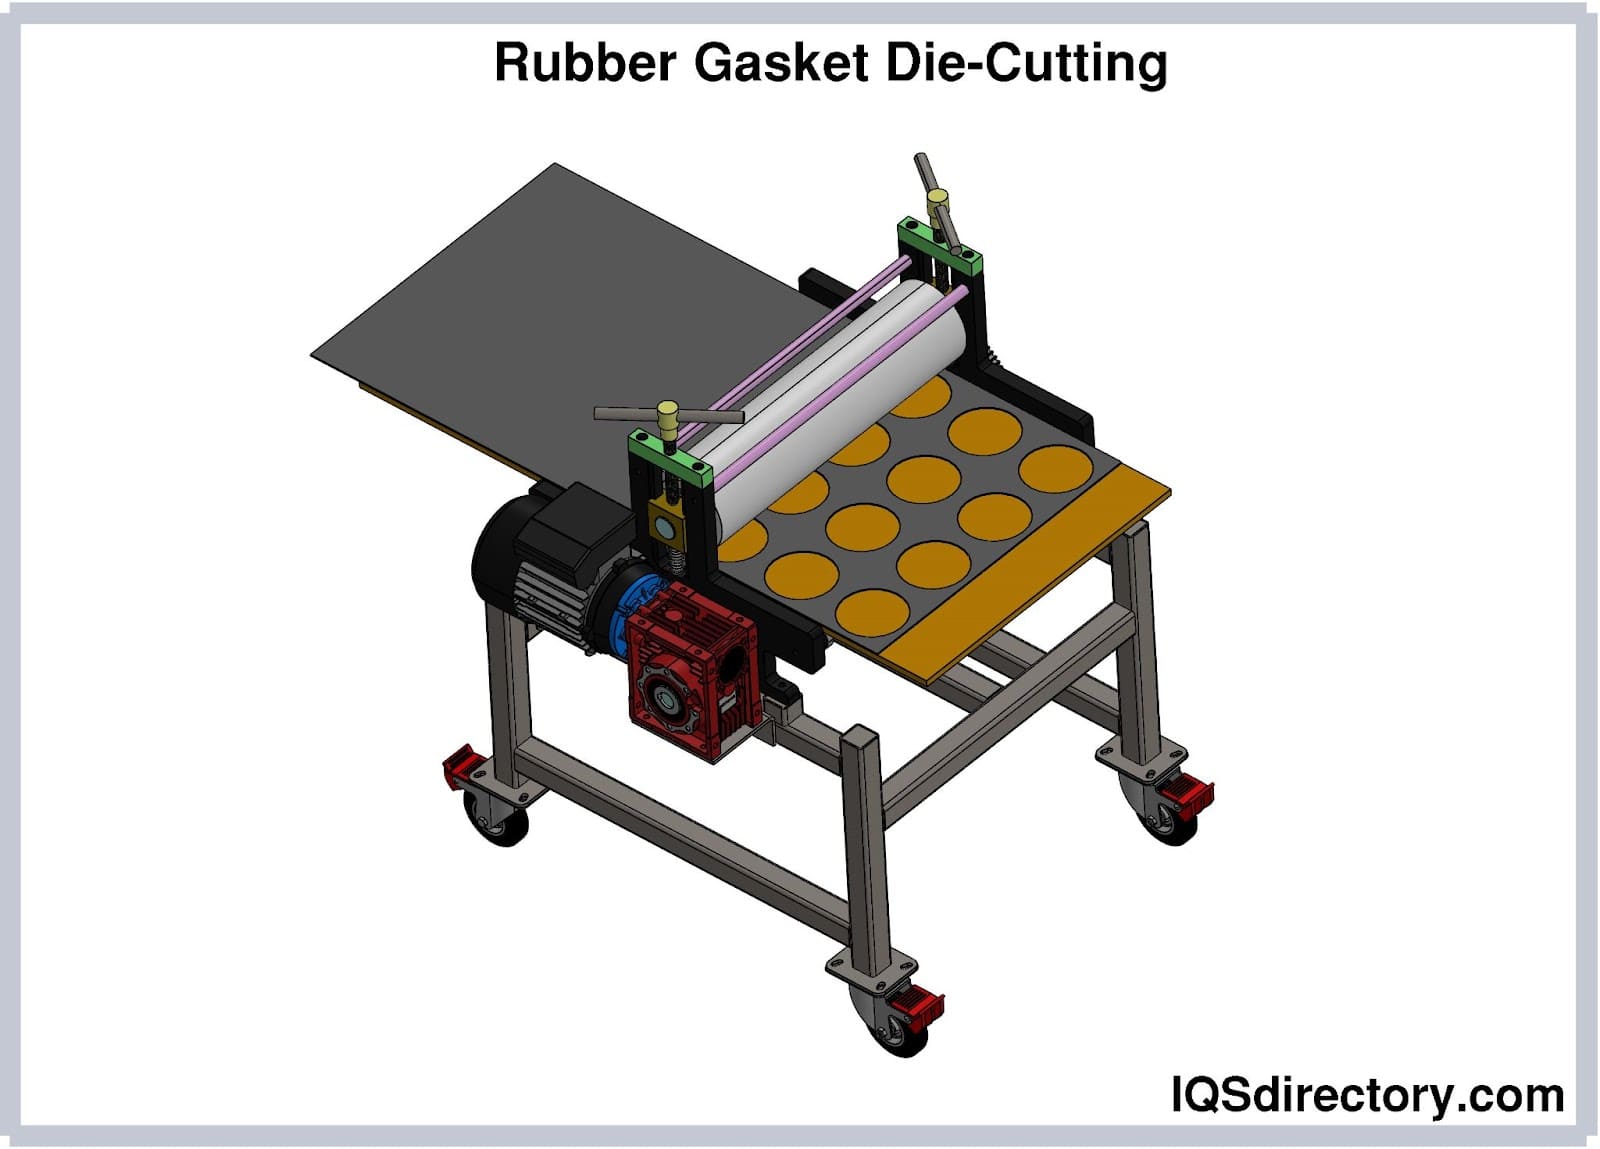 Rubber Gasket Die-Cutting